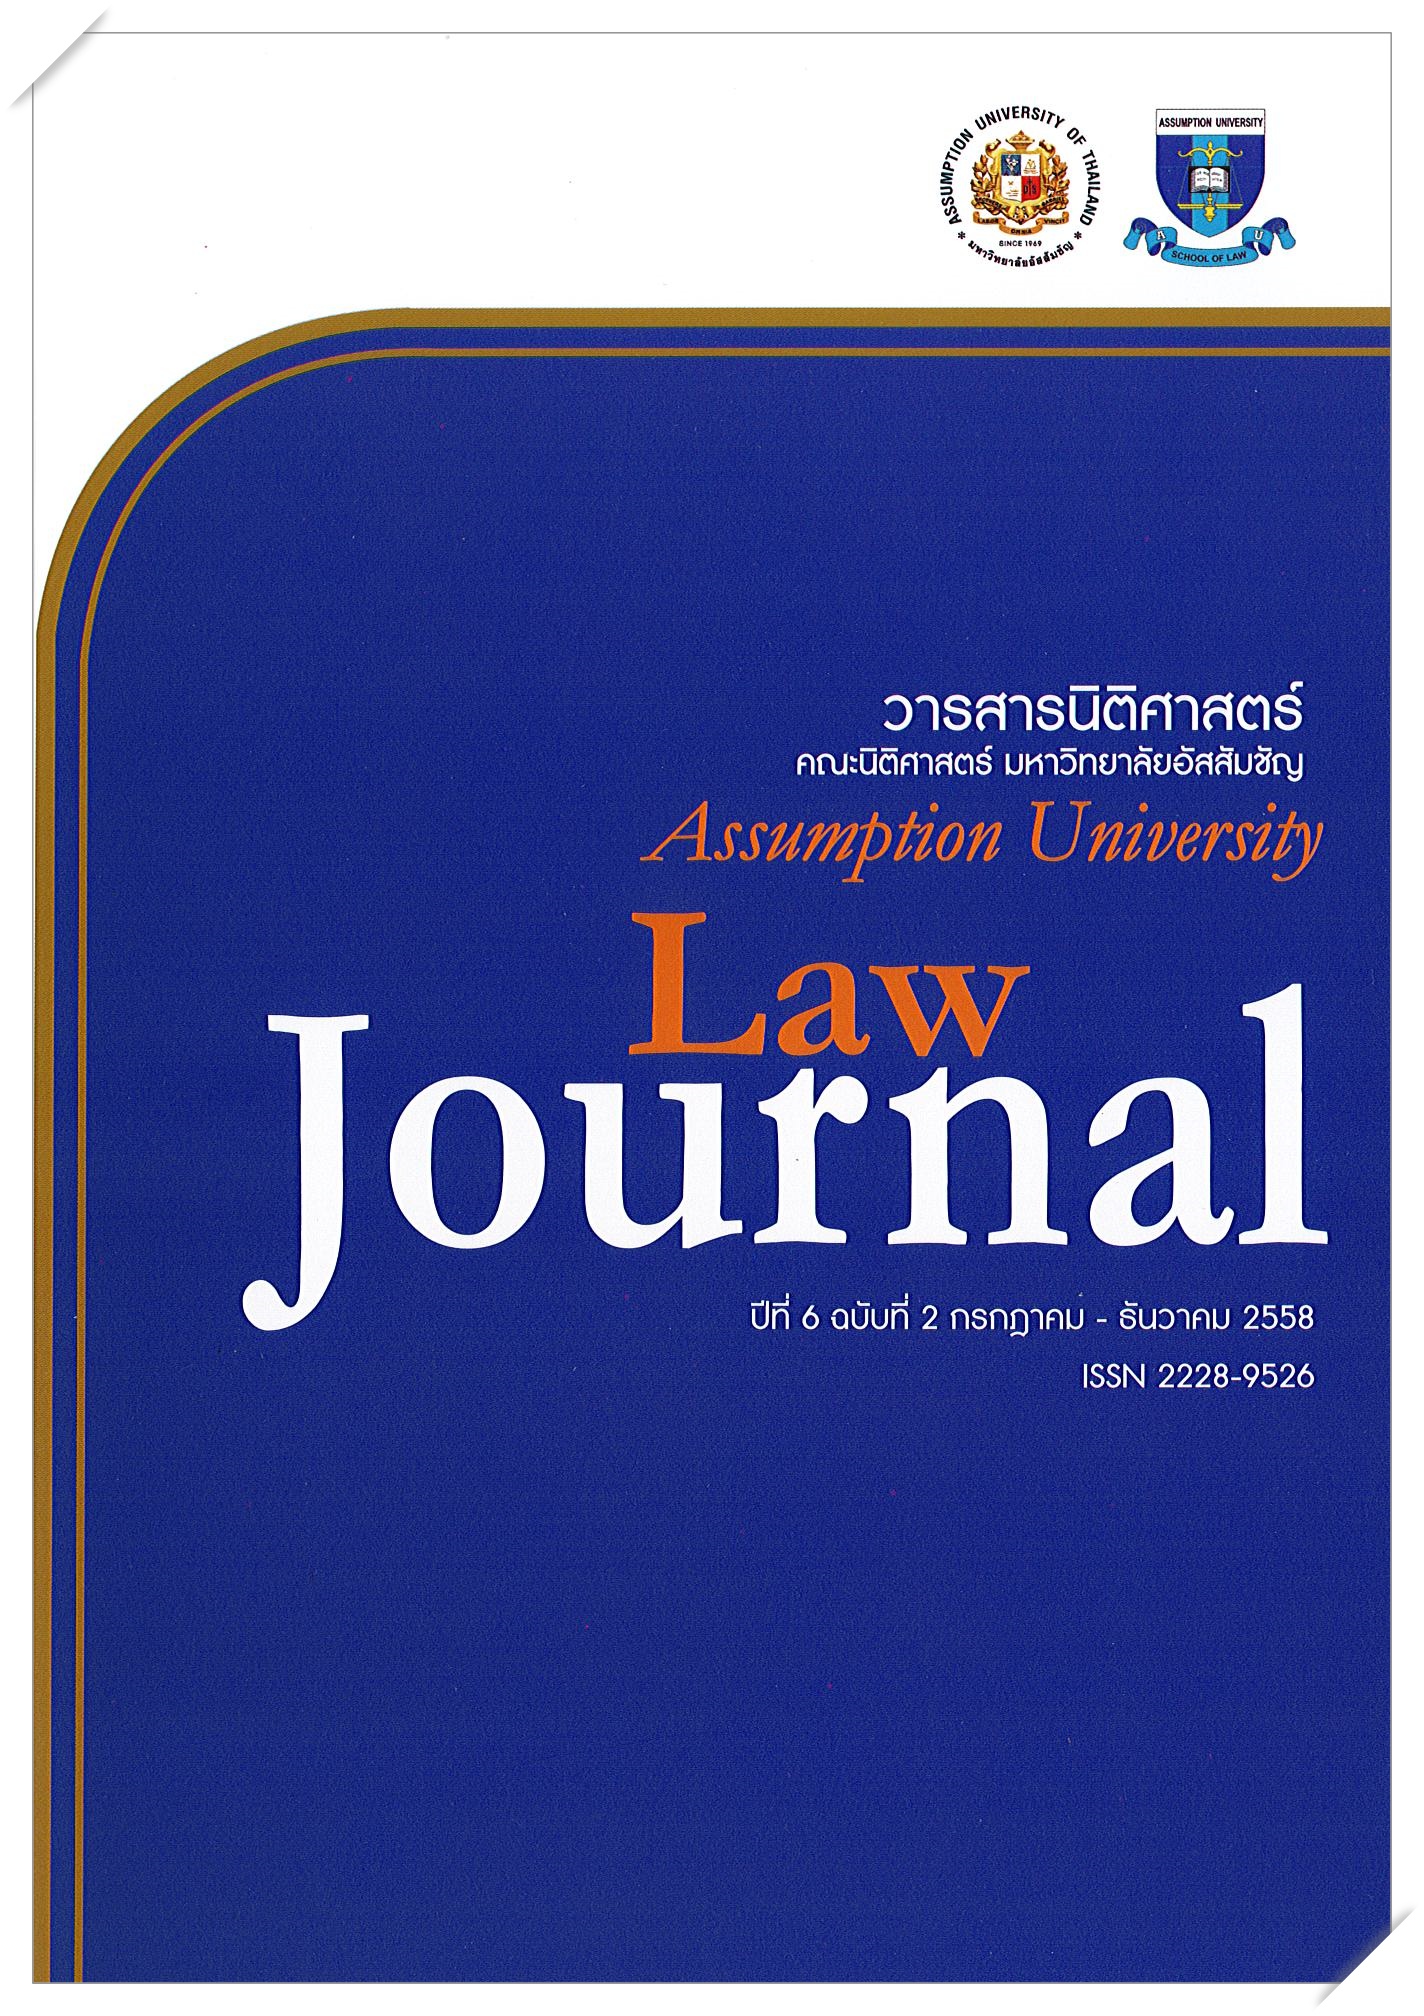 					View Vol. 6 No. 2 (2015): วารสารนิติศาสตร์ ปีที่ 6 ฉบับที่ 2 กรกฎาคม – ธันวาคม 2558
				